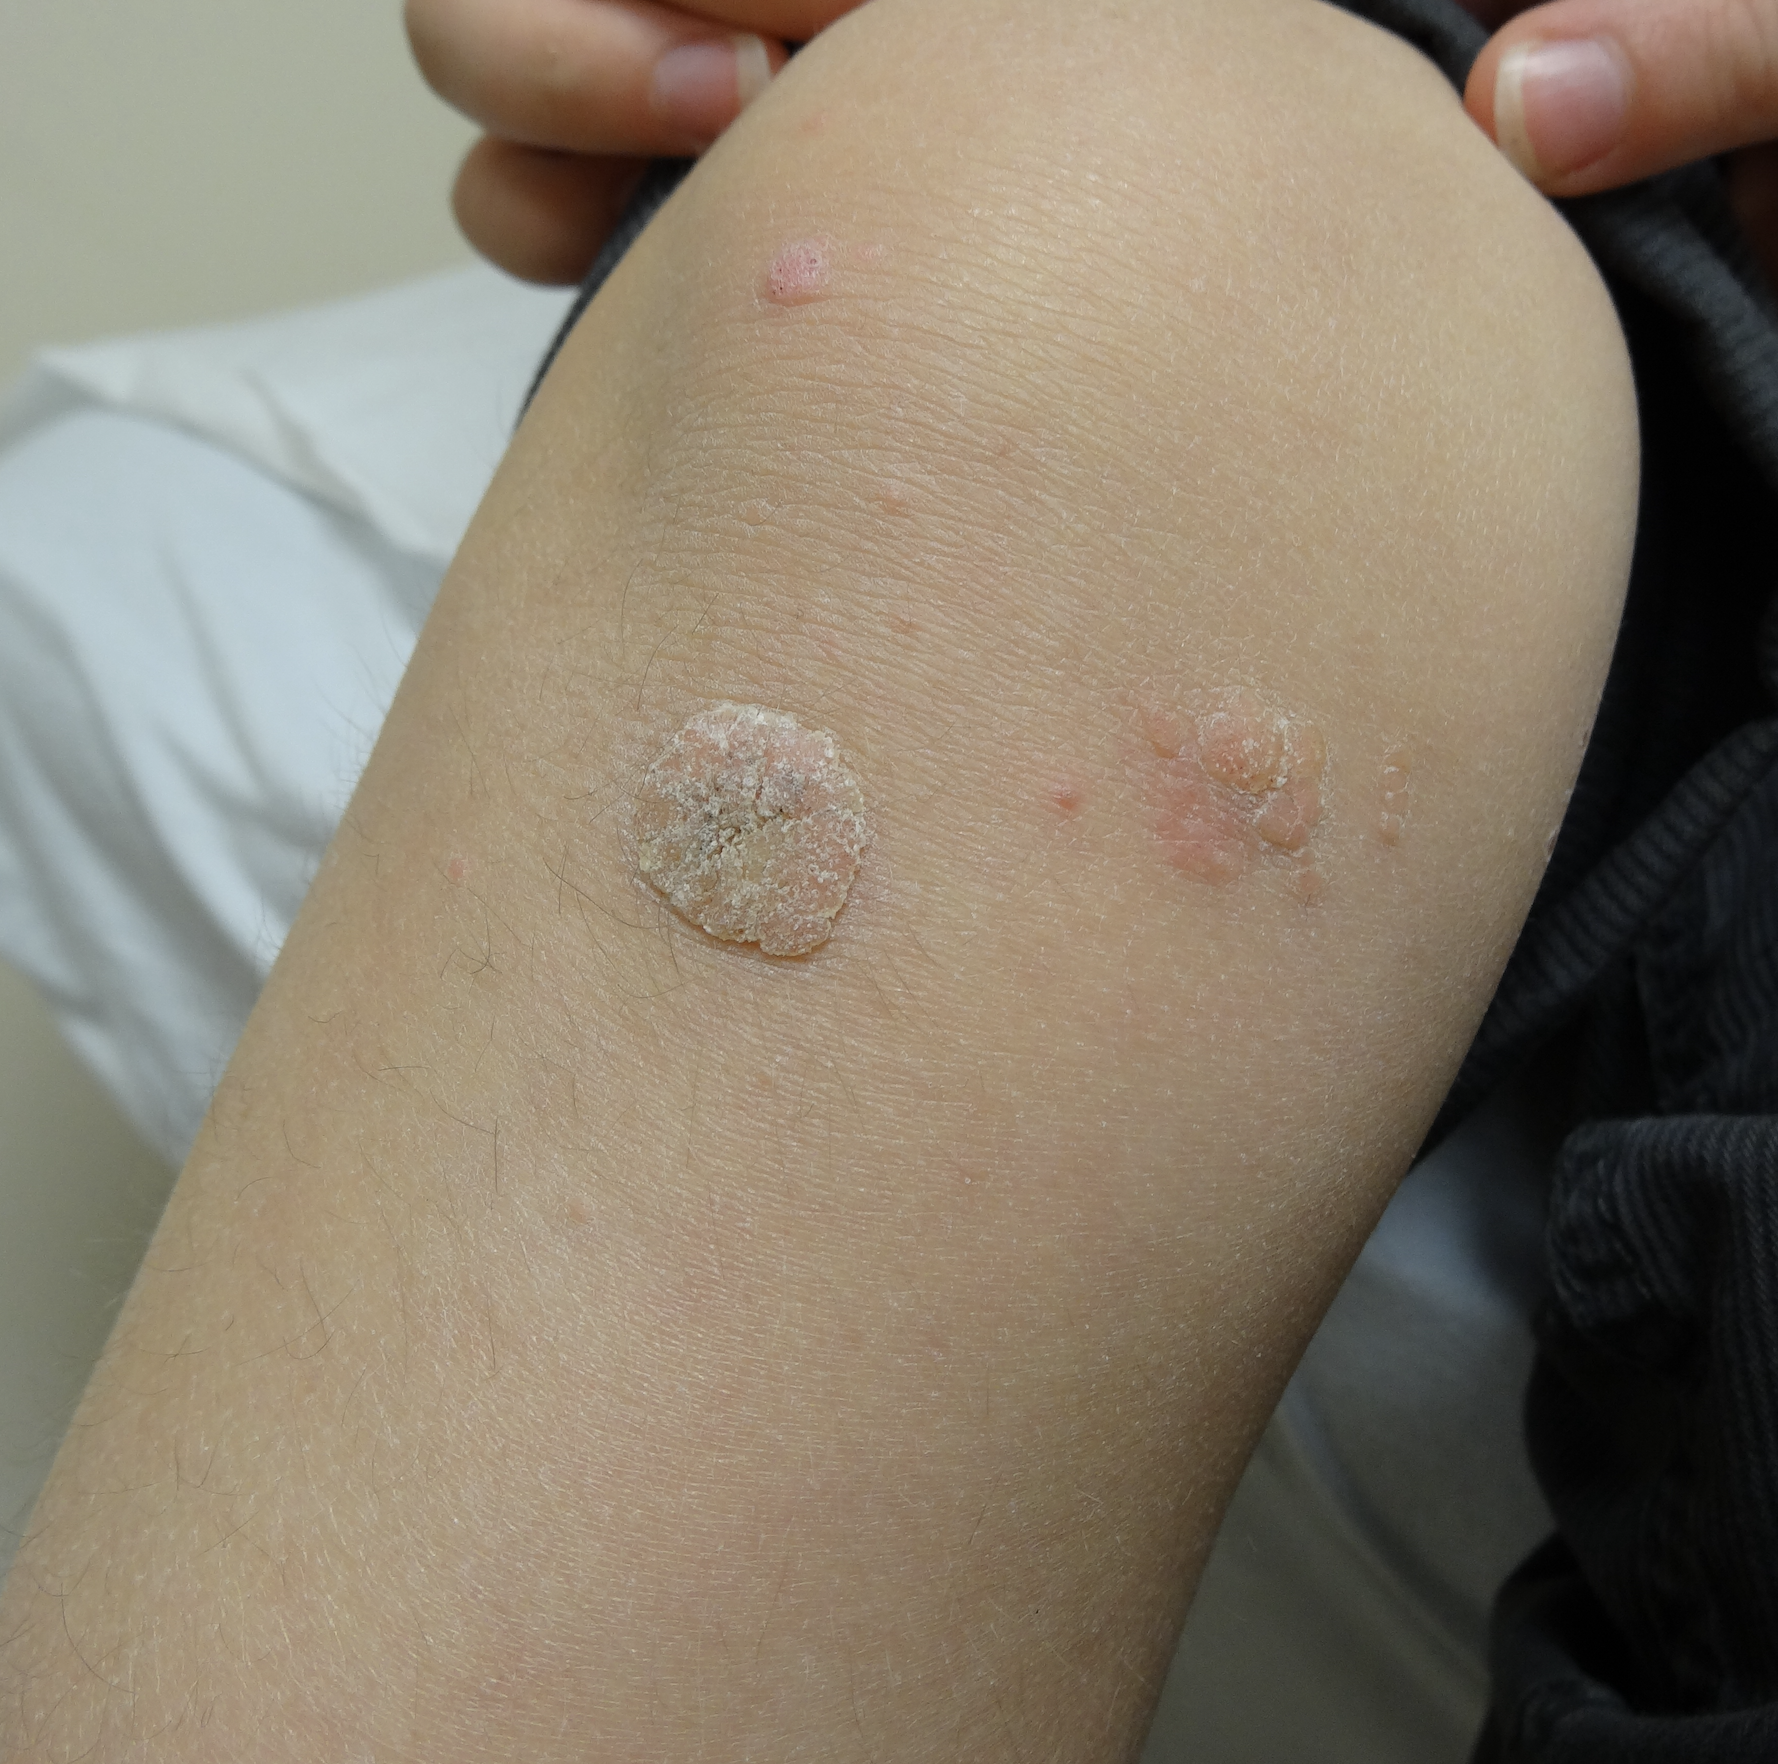 common warts on knee